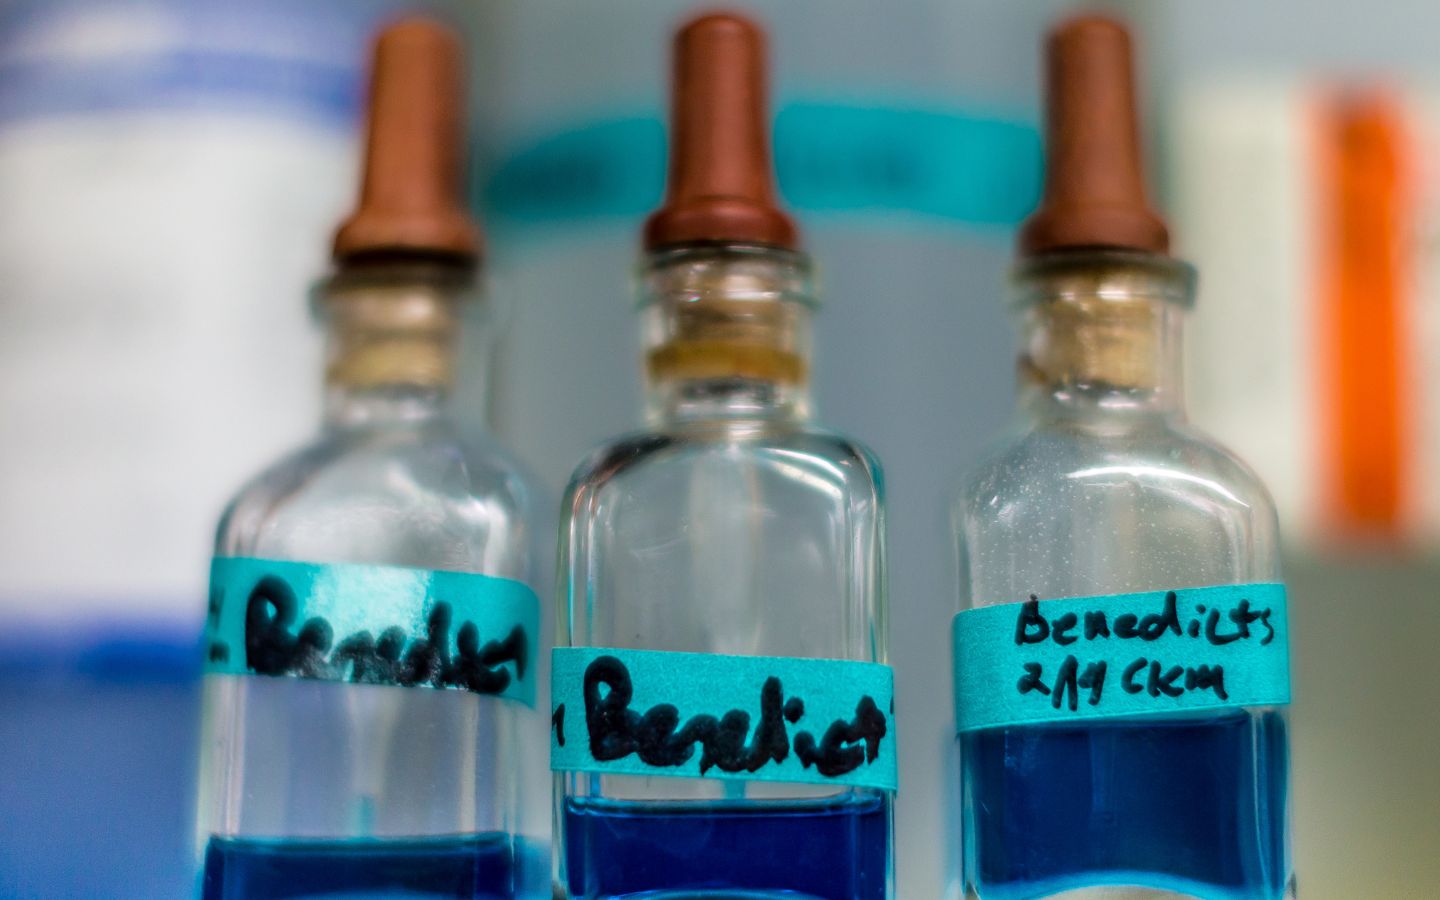 Close up image of biology bottles